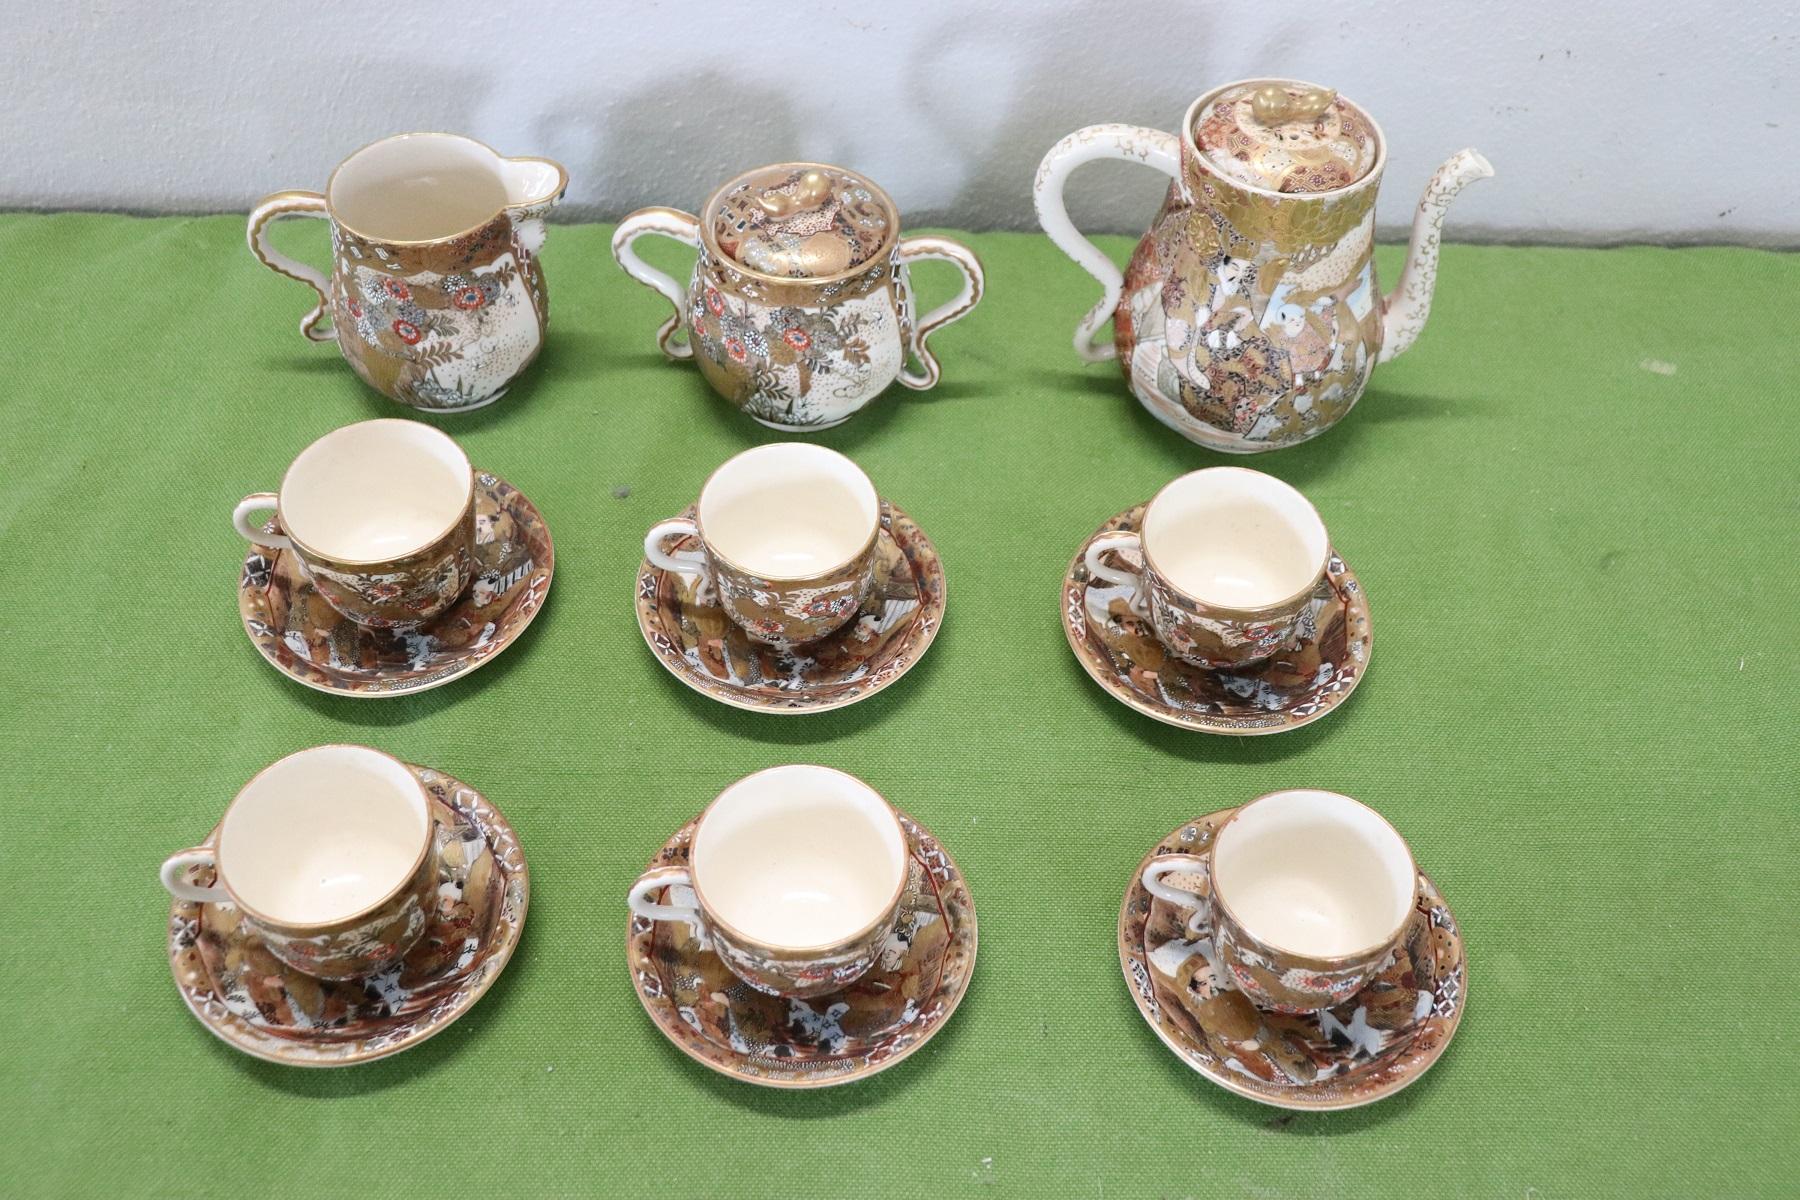 Magnifique service à thé ou à café en porcelaine peinte à la main et dorée Satsuma japonaise 15 pièces, années 1880. Le service complet pour servir six personnes à table comprend : 1 théière, 1 sucrier, 1 pot à lait, six tasses avec soucoupes.